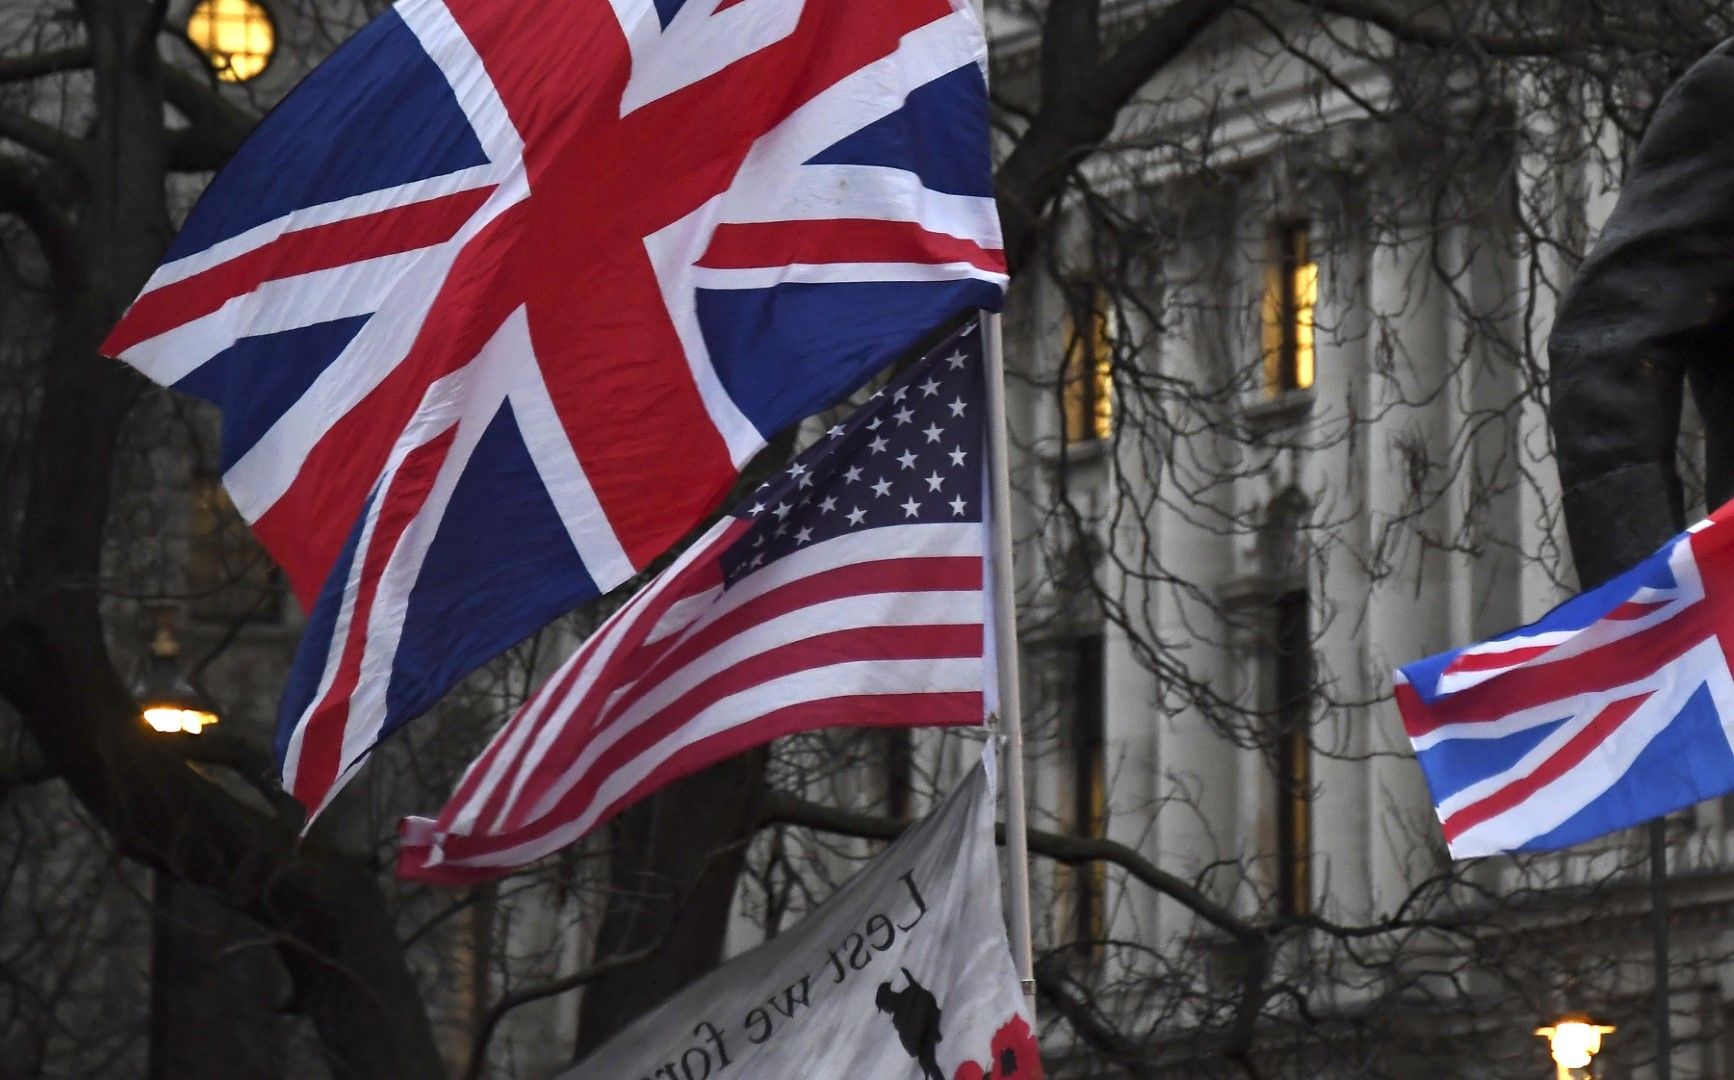 31 януари 2020 г. Привърженици на Брекзит Brexit държат британски и американски знамена по време на митинг в Лондон